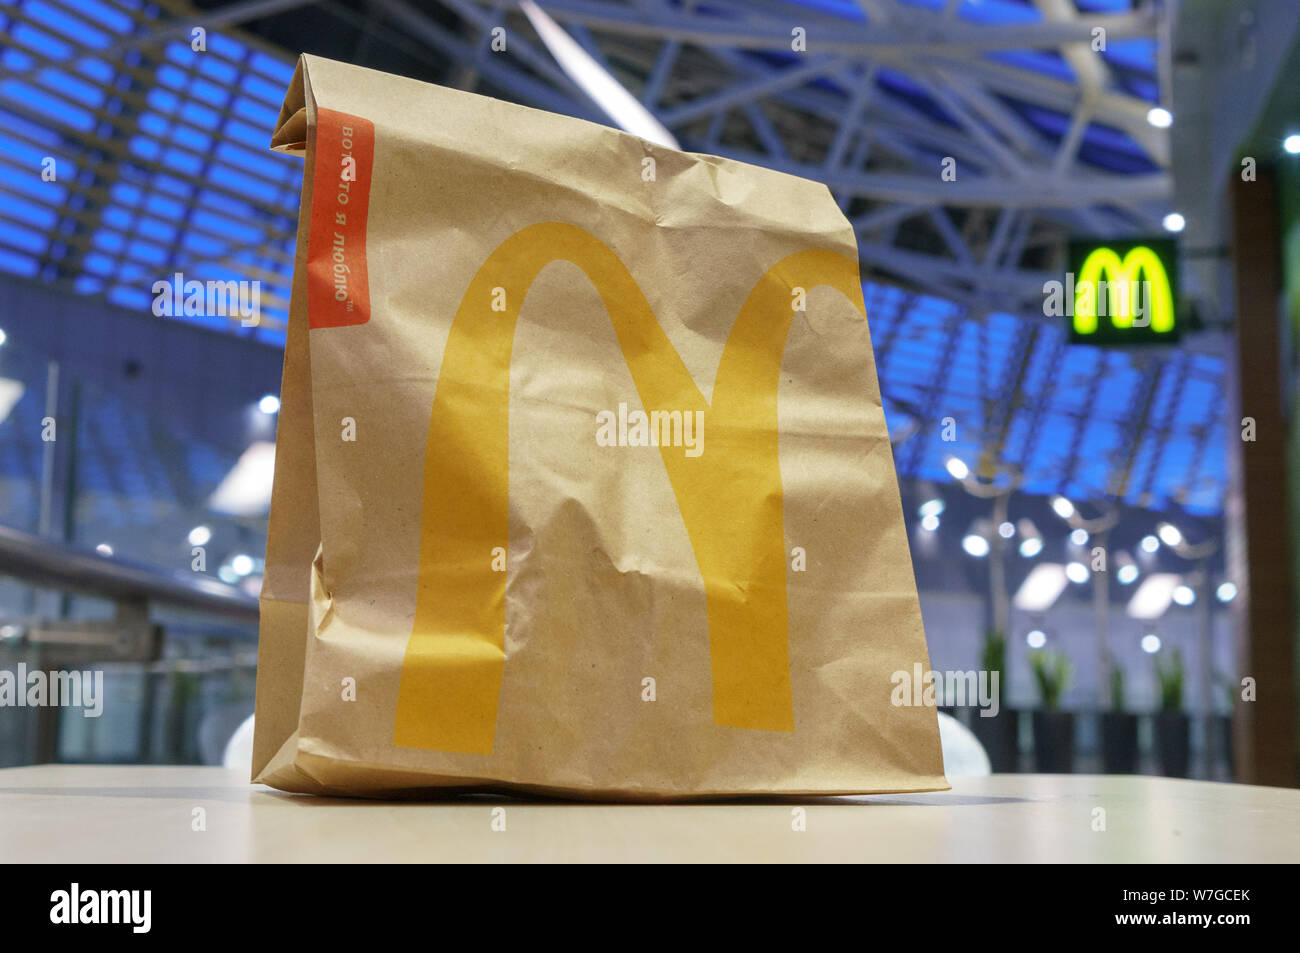 Moscou, Russie - Février 07, 2019 : McDonald's sac en papier brun avec kiosque brouillée dans centre commercial. Banque D'Images